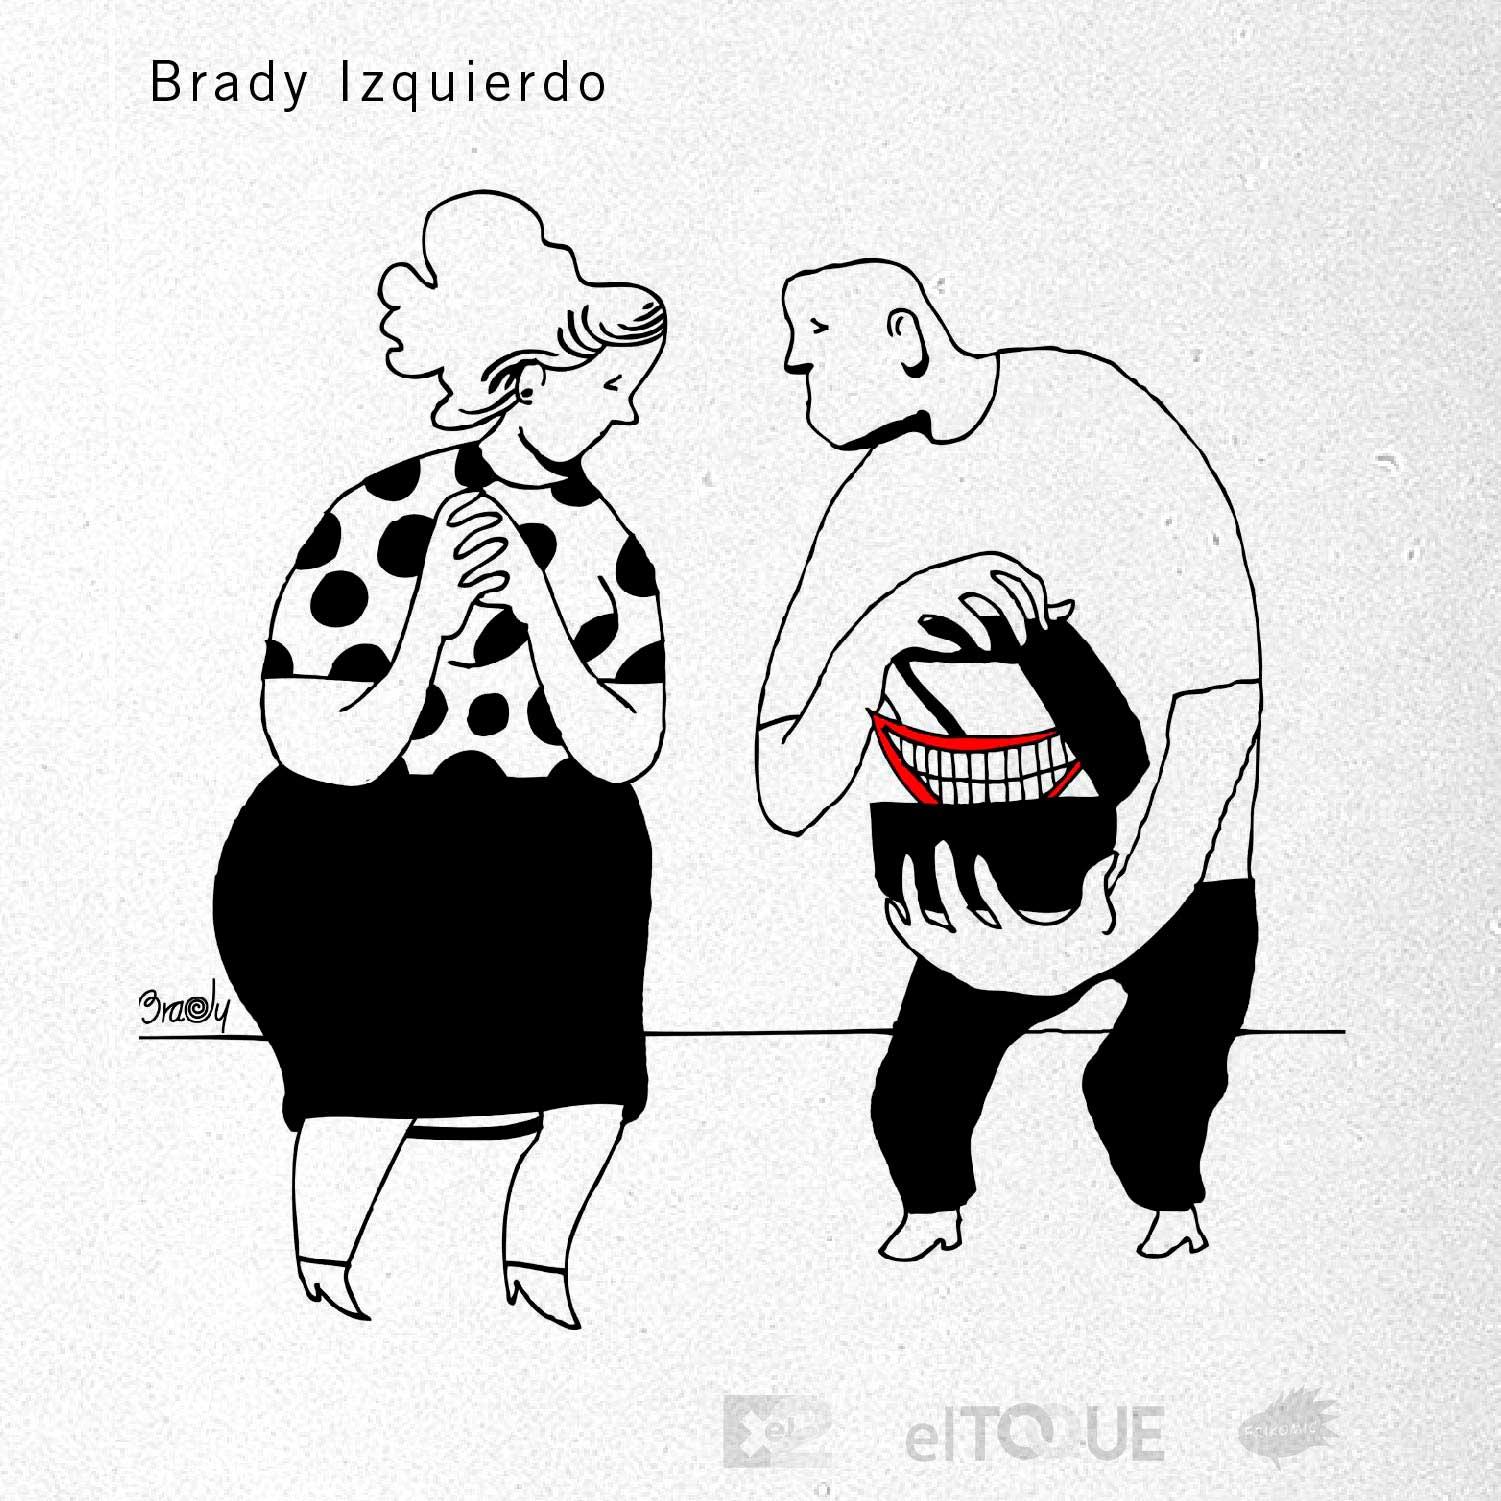 21-03-Izquierdo-Brady-POSTALES-NUEVA-NORMALIDAD-CUBA-ECONOMIA-ESCASEZ.jpg